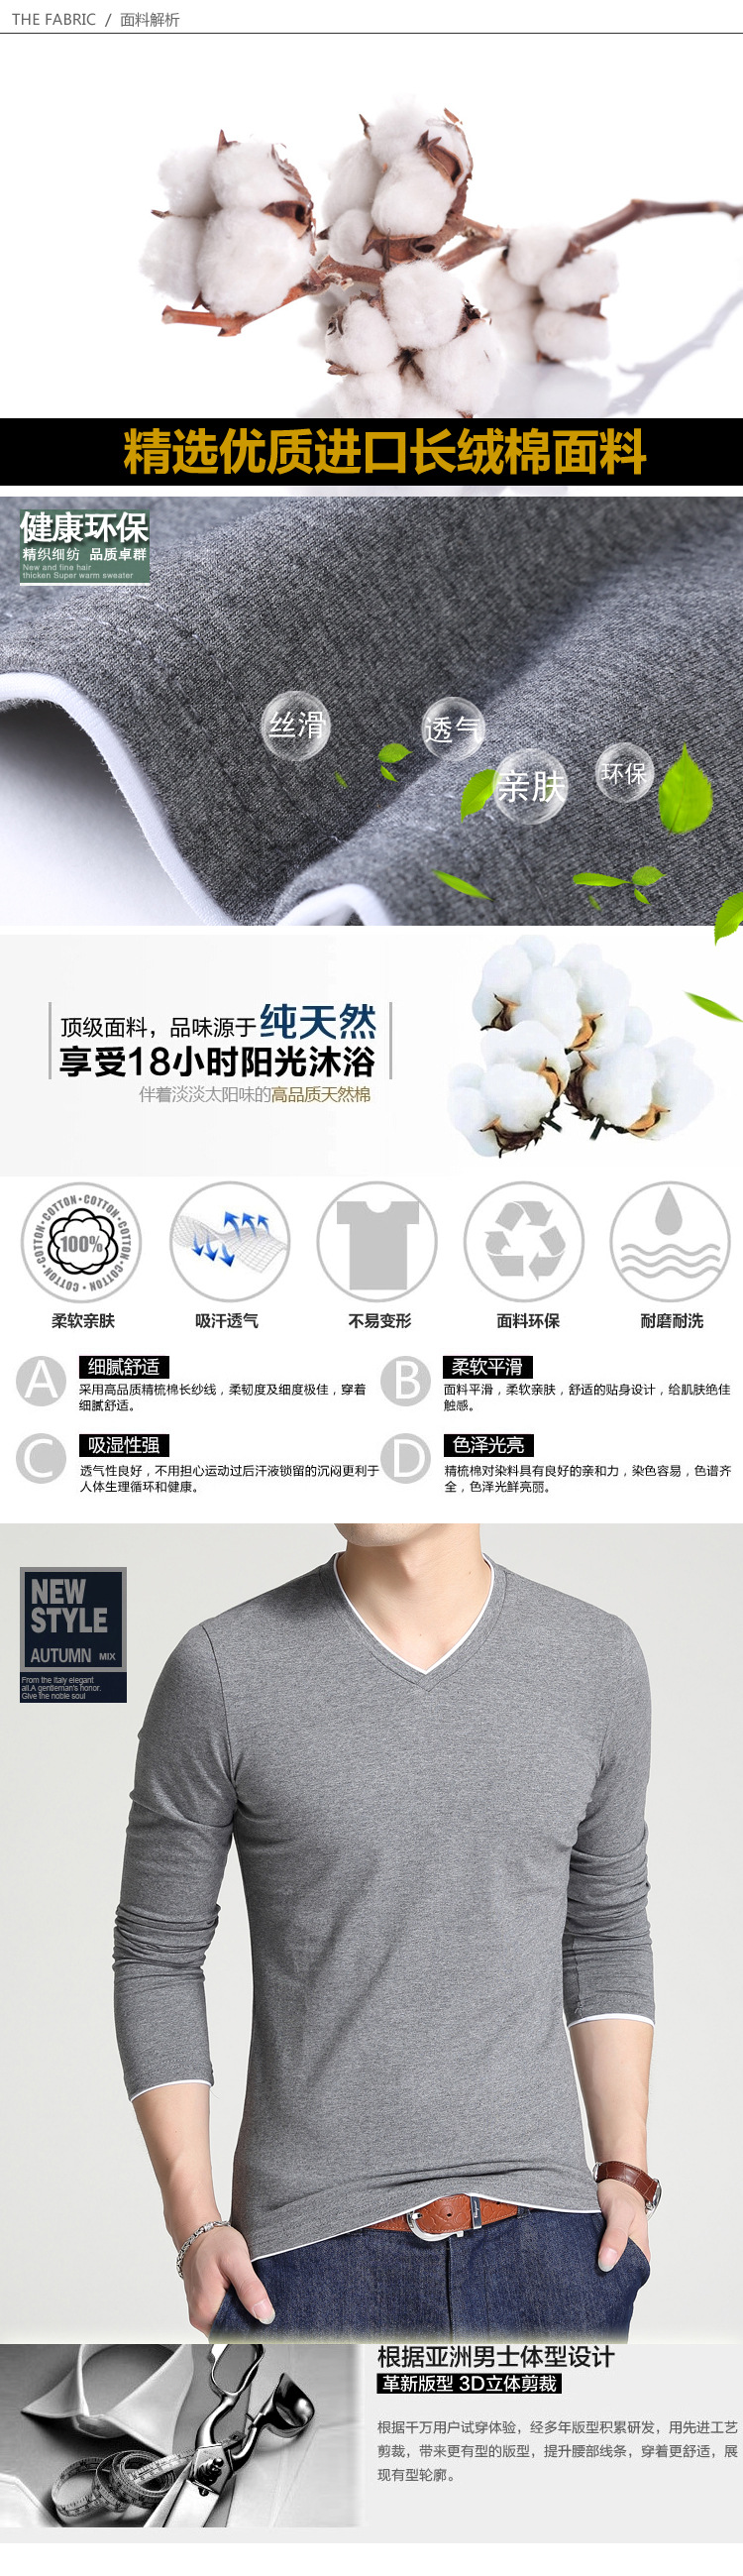 男式长袖T恤2017春夏新款韩版时尚休闲修身V领纯色棉t恤*爆款示例图4